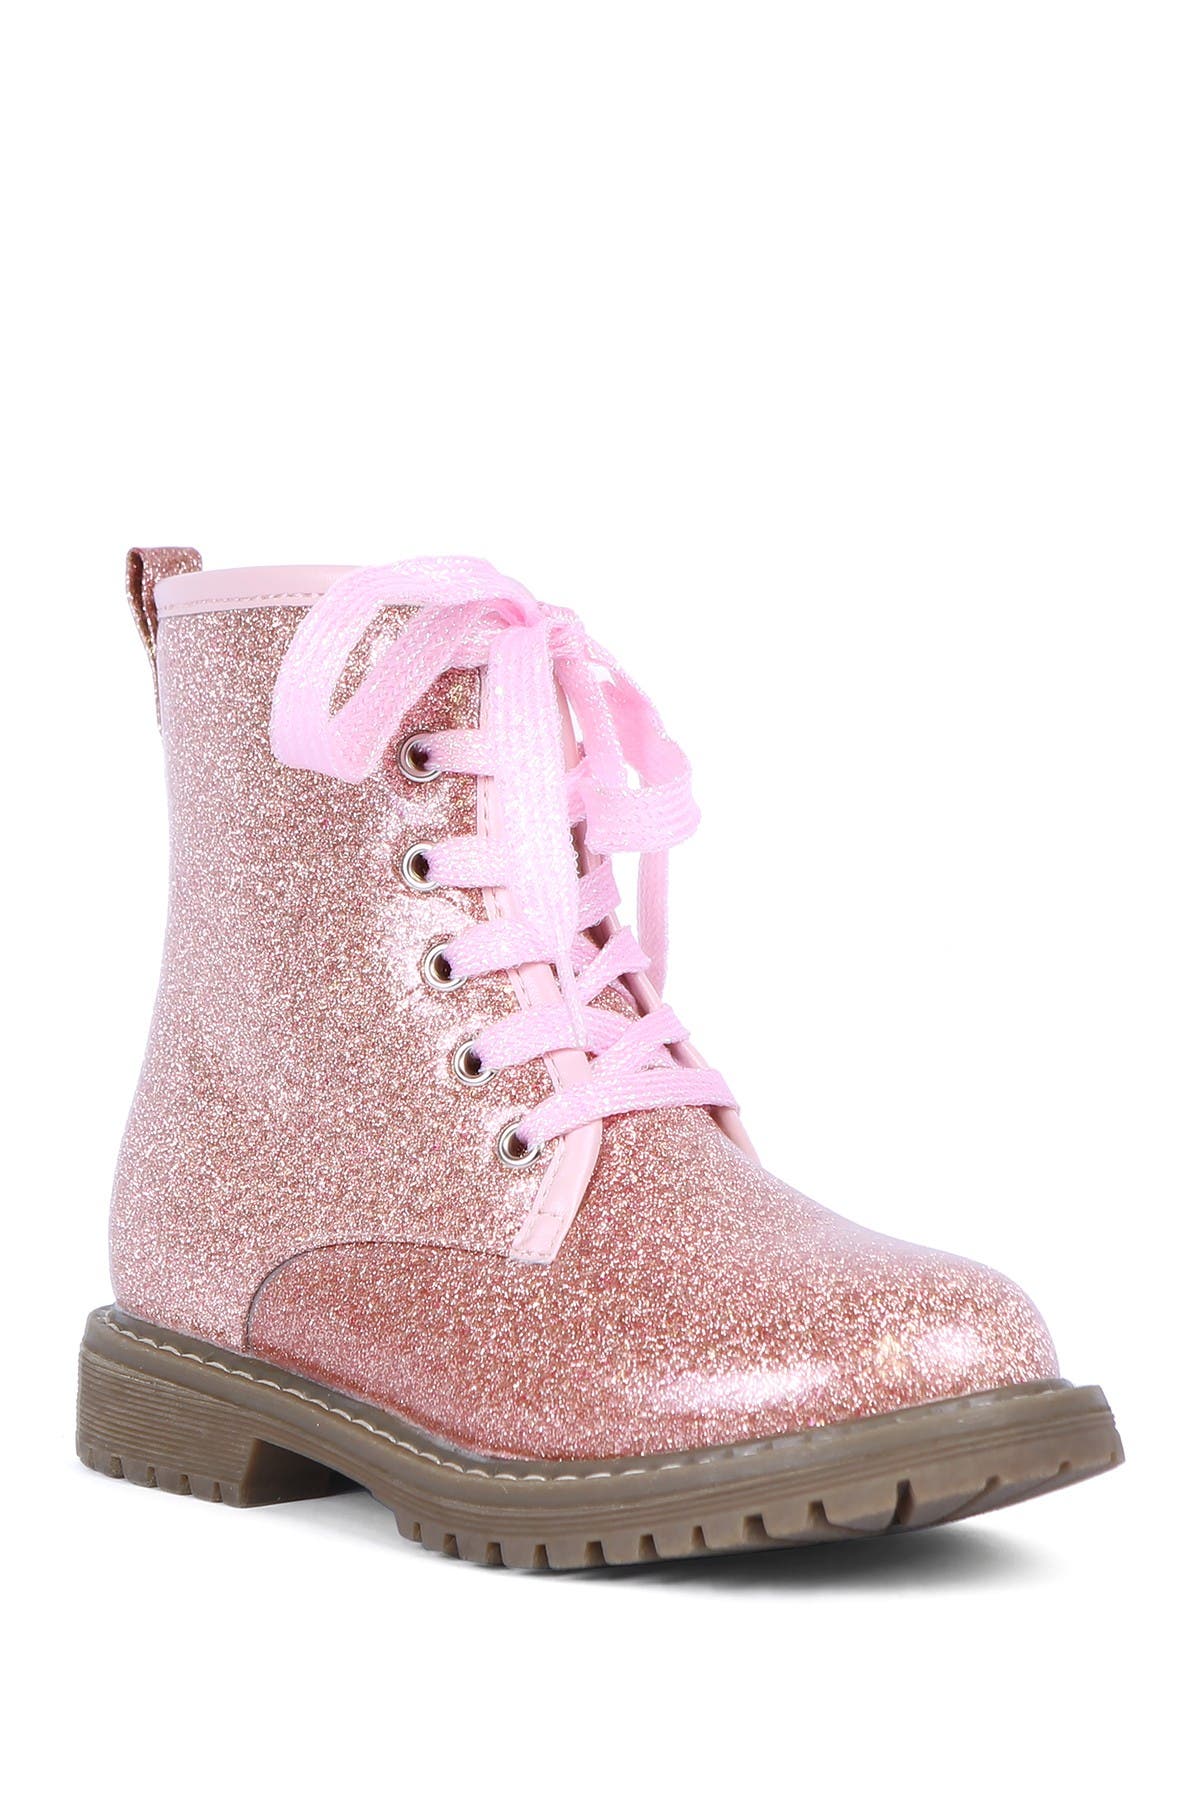 Boots \u0026 Booties for Girls | Nordstrom Rack